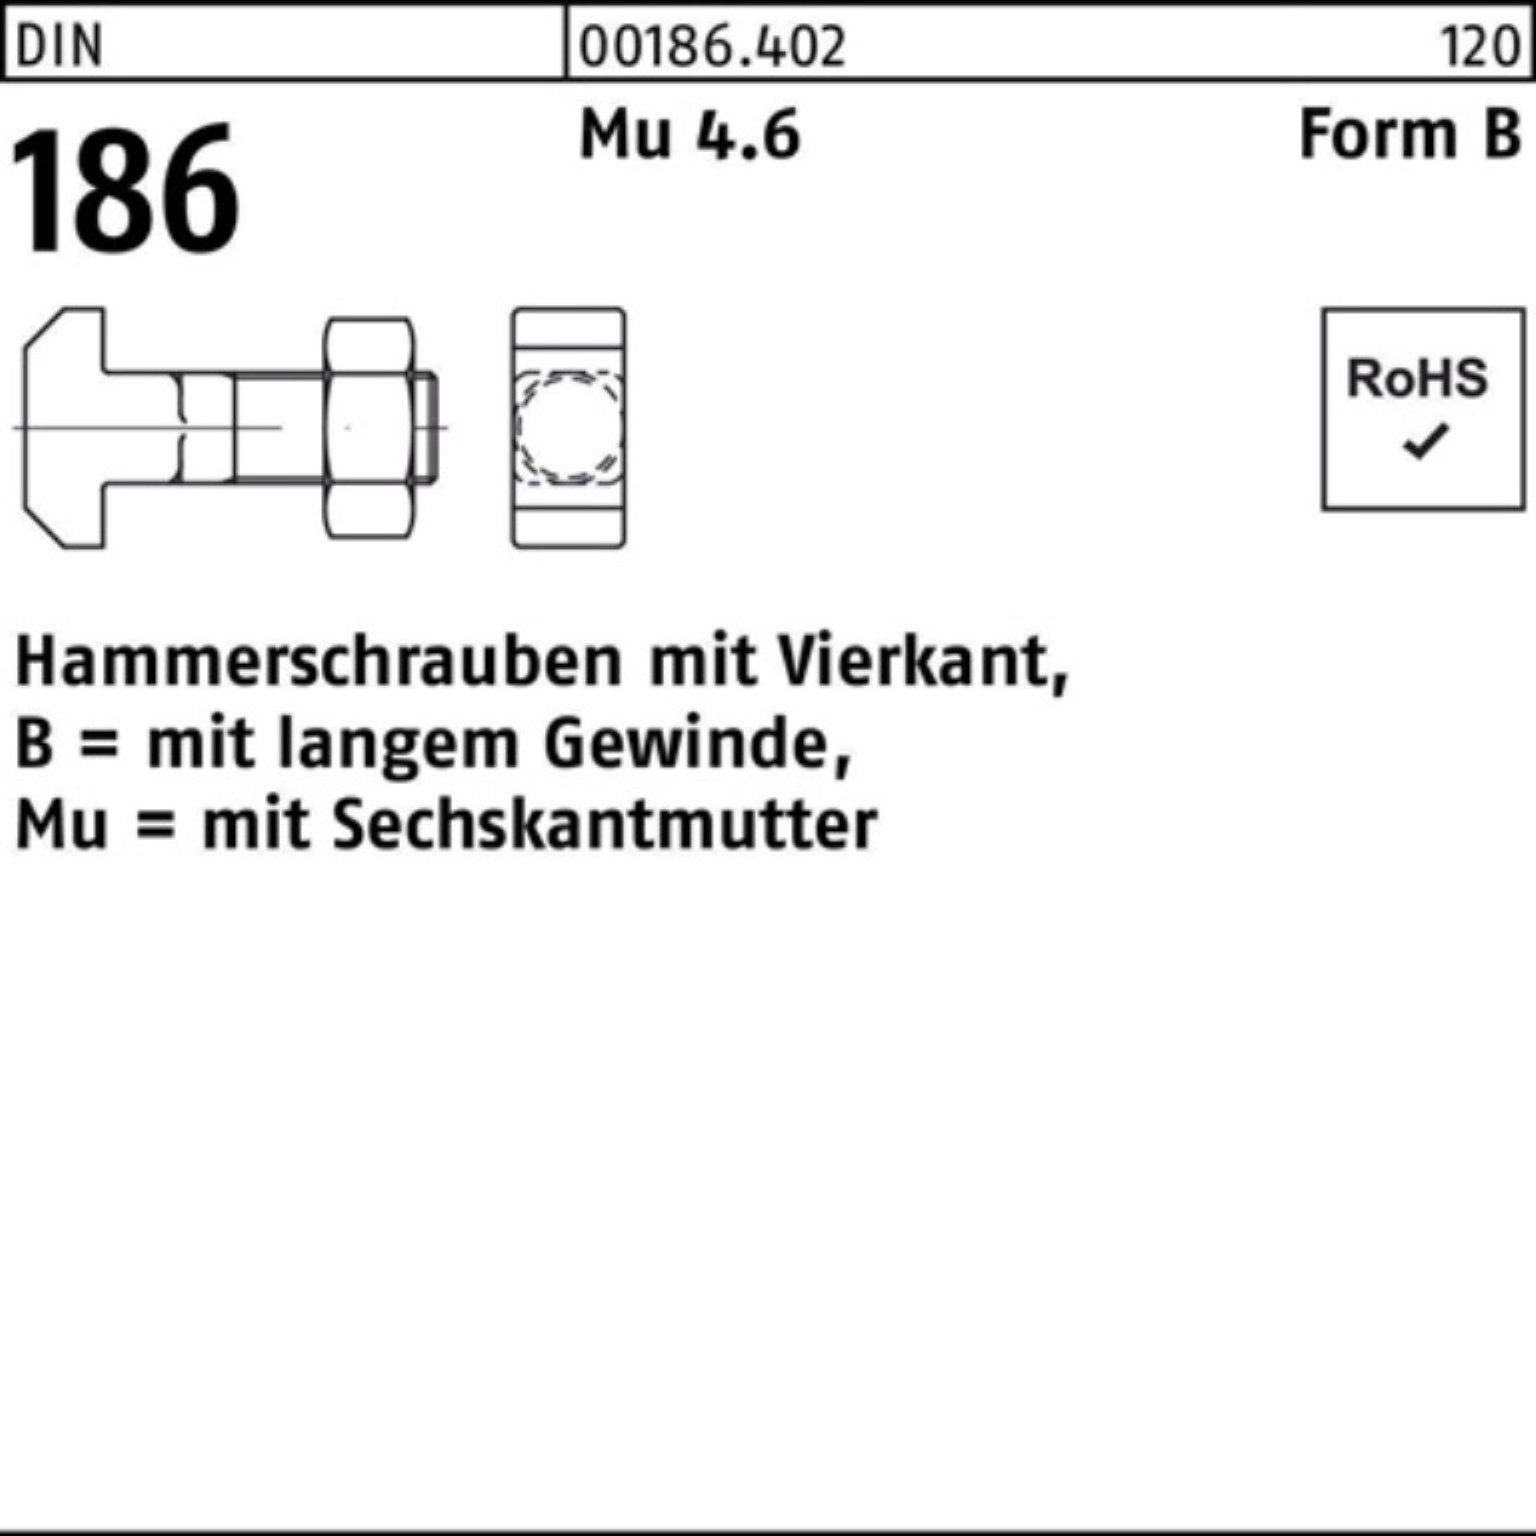 Reyher Schraube 100er Pack Hammerschraube DIN 186 FormB Vierkant 6-ktmutter BM 10x 100